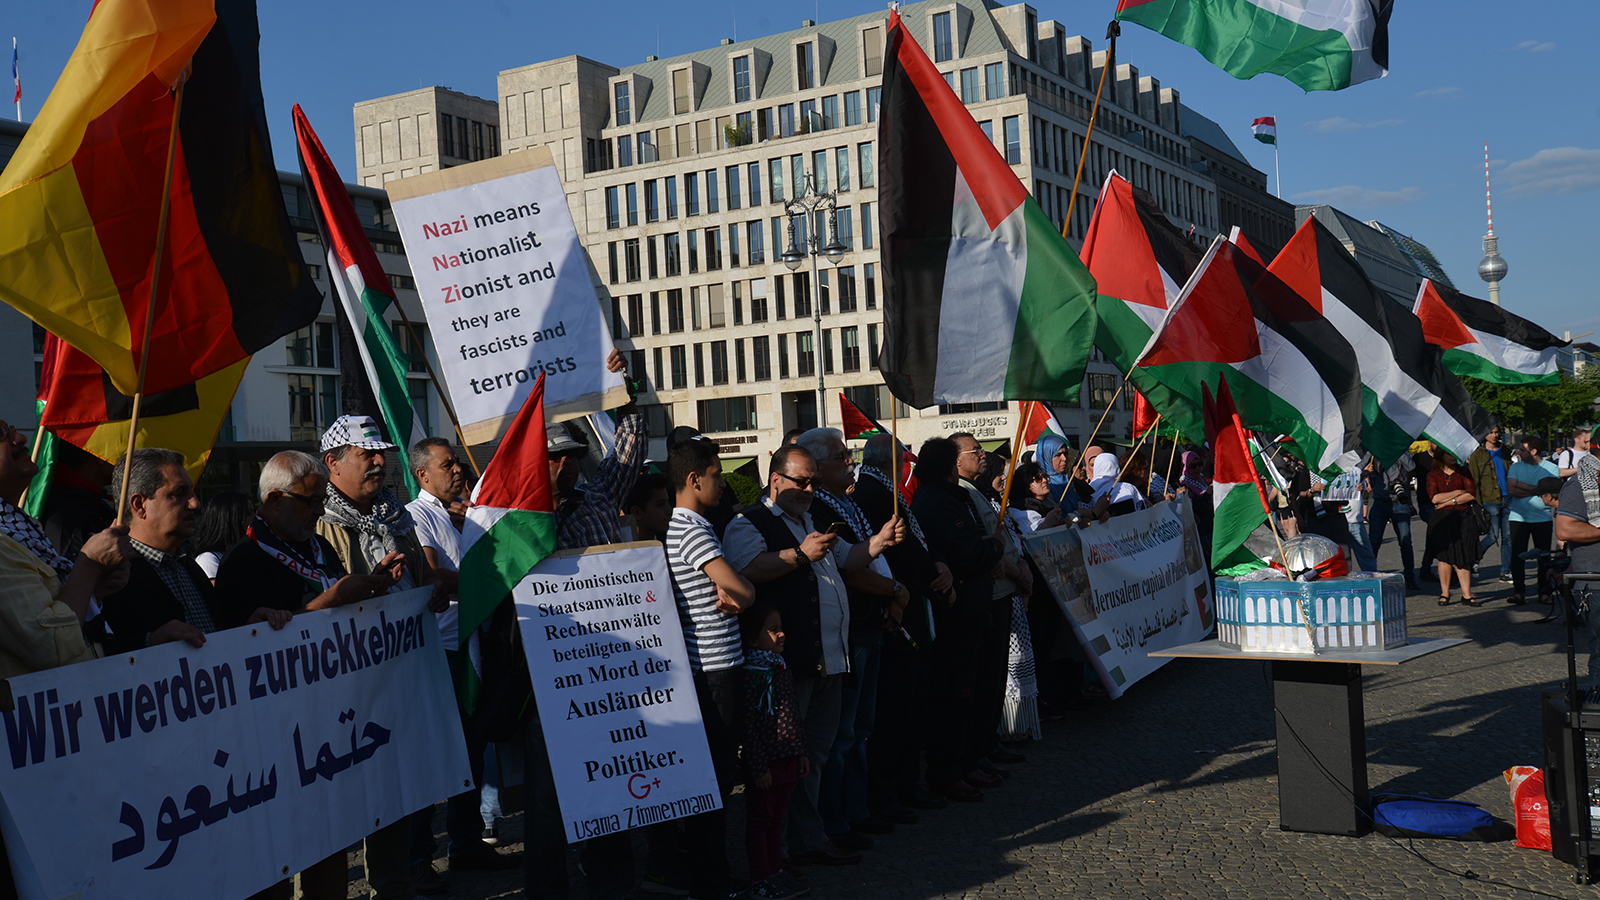 الفلسطينيون المشاركون في المظاهرة رفعوا لافتات تؤكد يقينهم بعودتهم إلى وطنهم (الجزيرة نت)